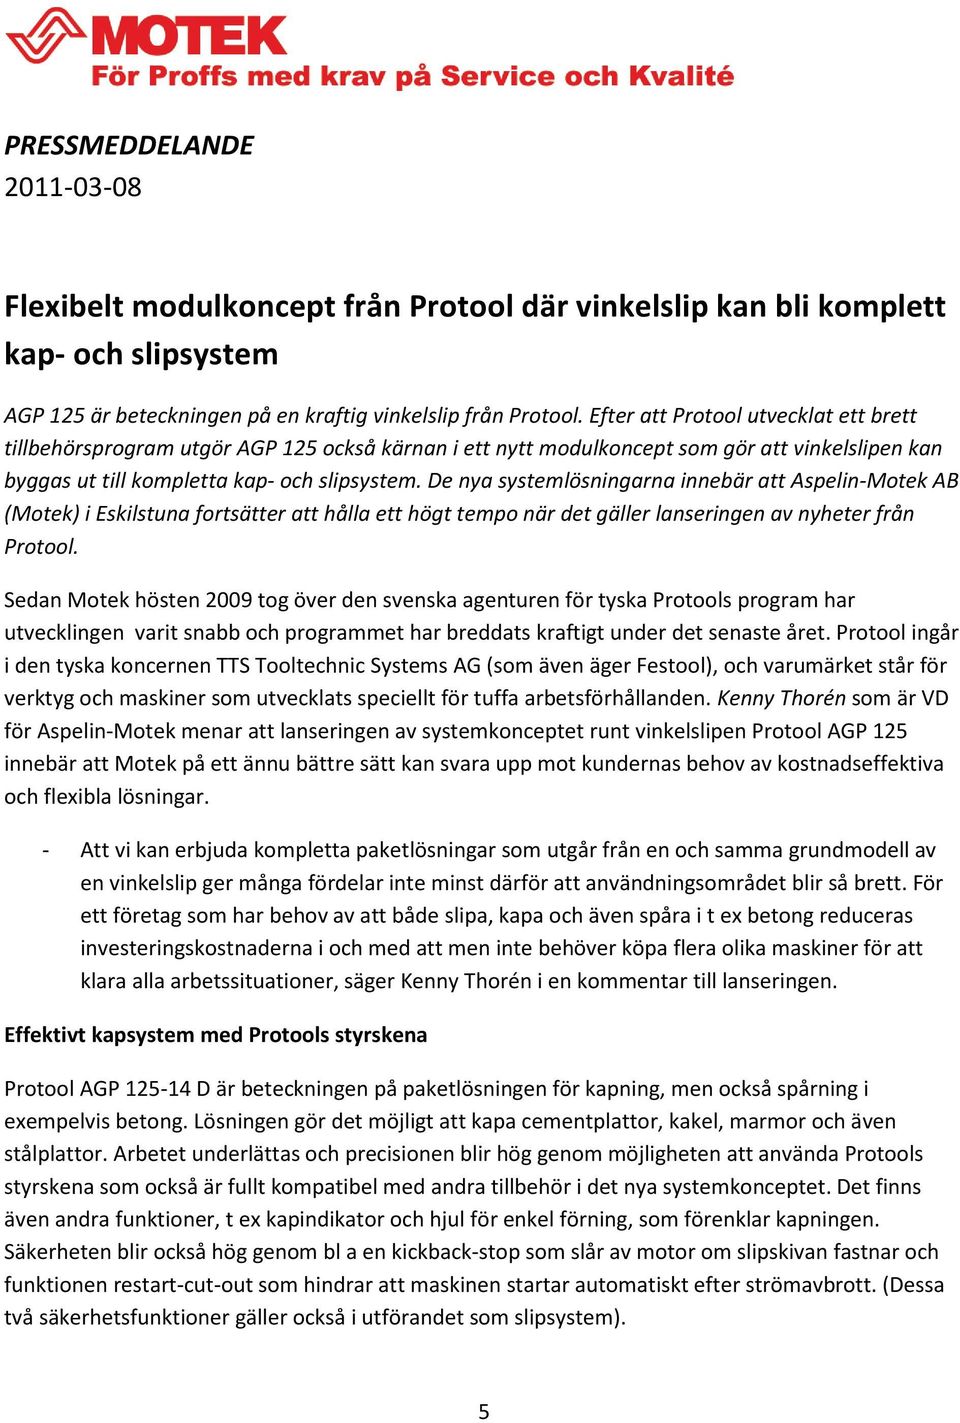 De nya systemlösningarna innebär att Aspelin-Motek AB (Motek) i Eskilstuna fortsätter att hålla ett högt tempo när det gäller lanseringen av nyheter från Protool.